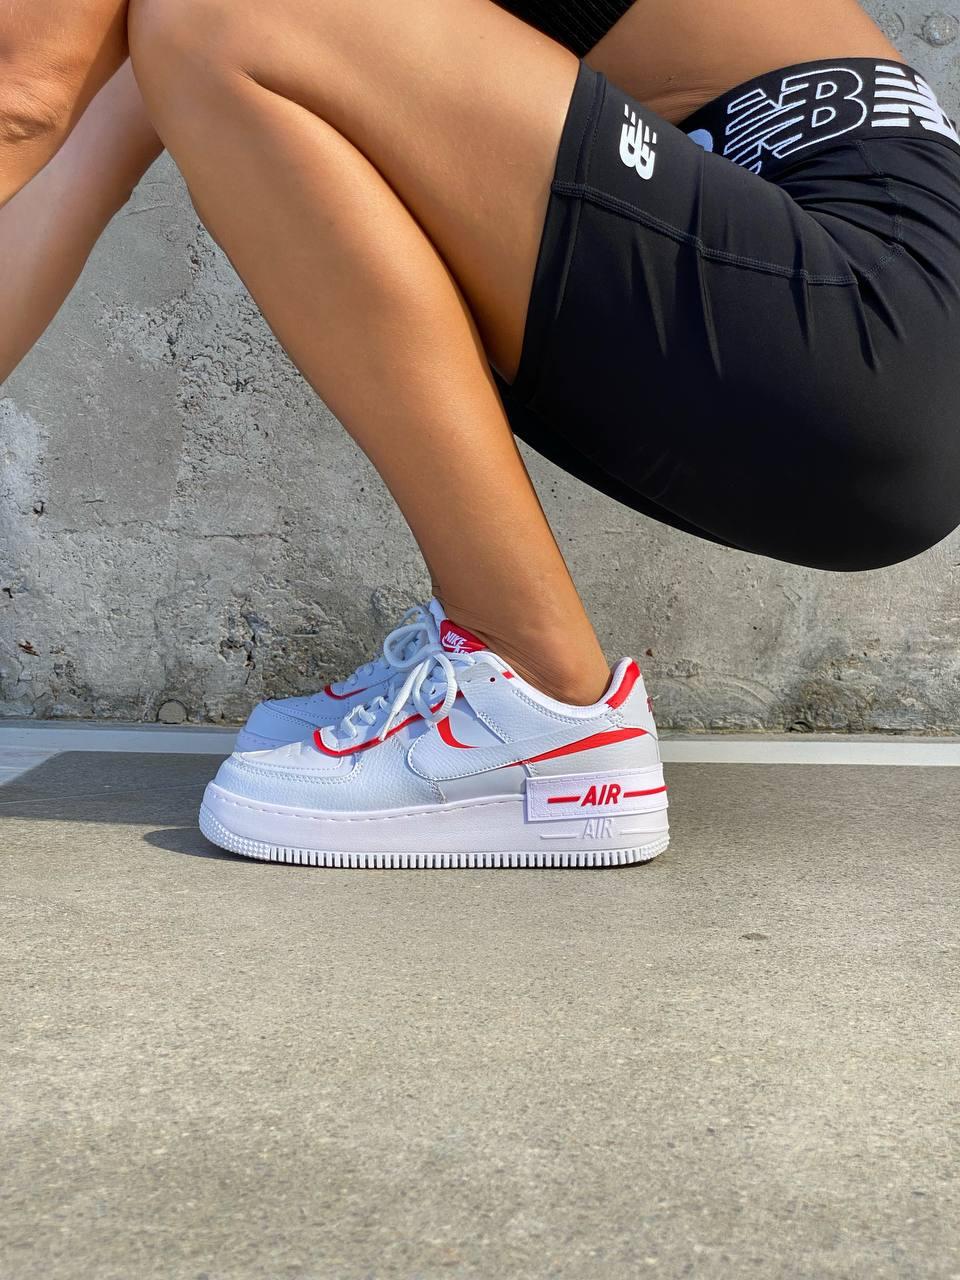 Жіночі кросівки Nike Air Force Shadow White Red| Найк Аір Форс Шадов Білі Червоні